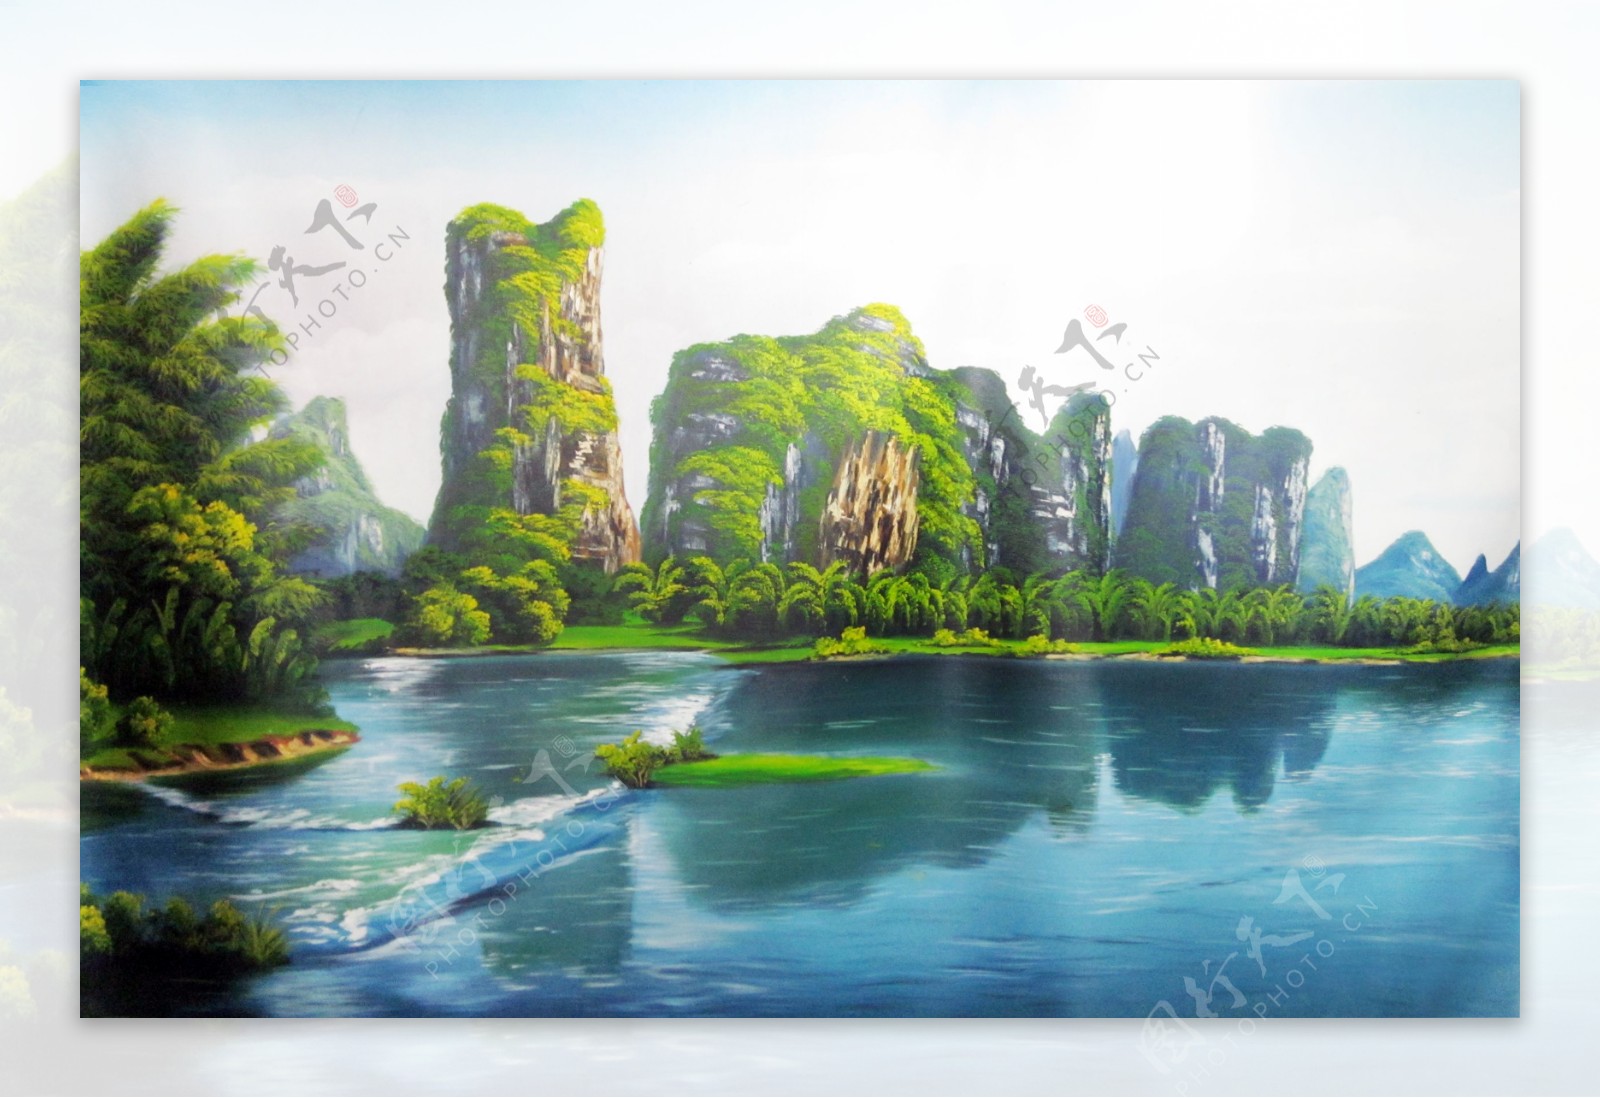 桂林山水油画图片